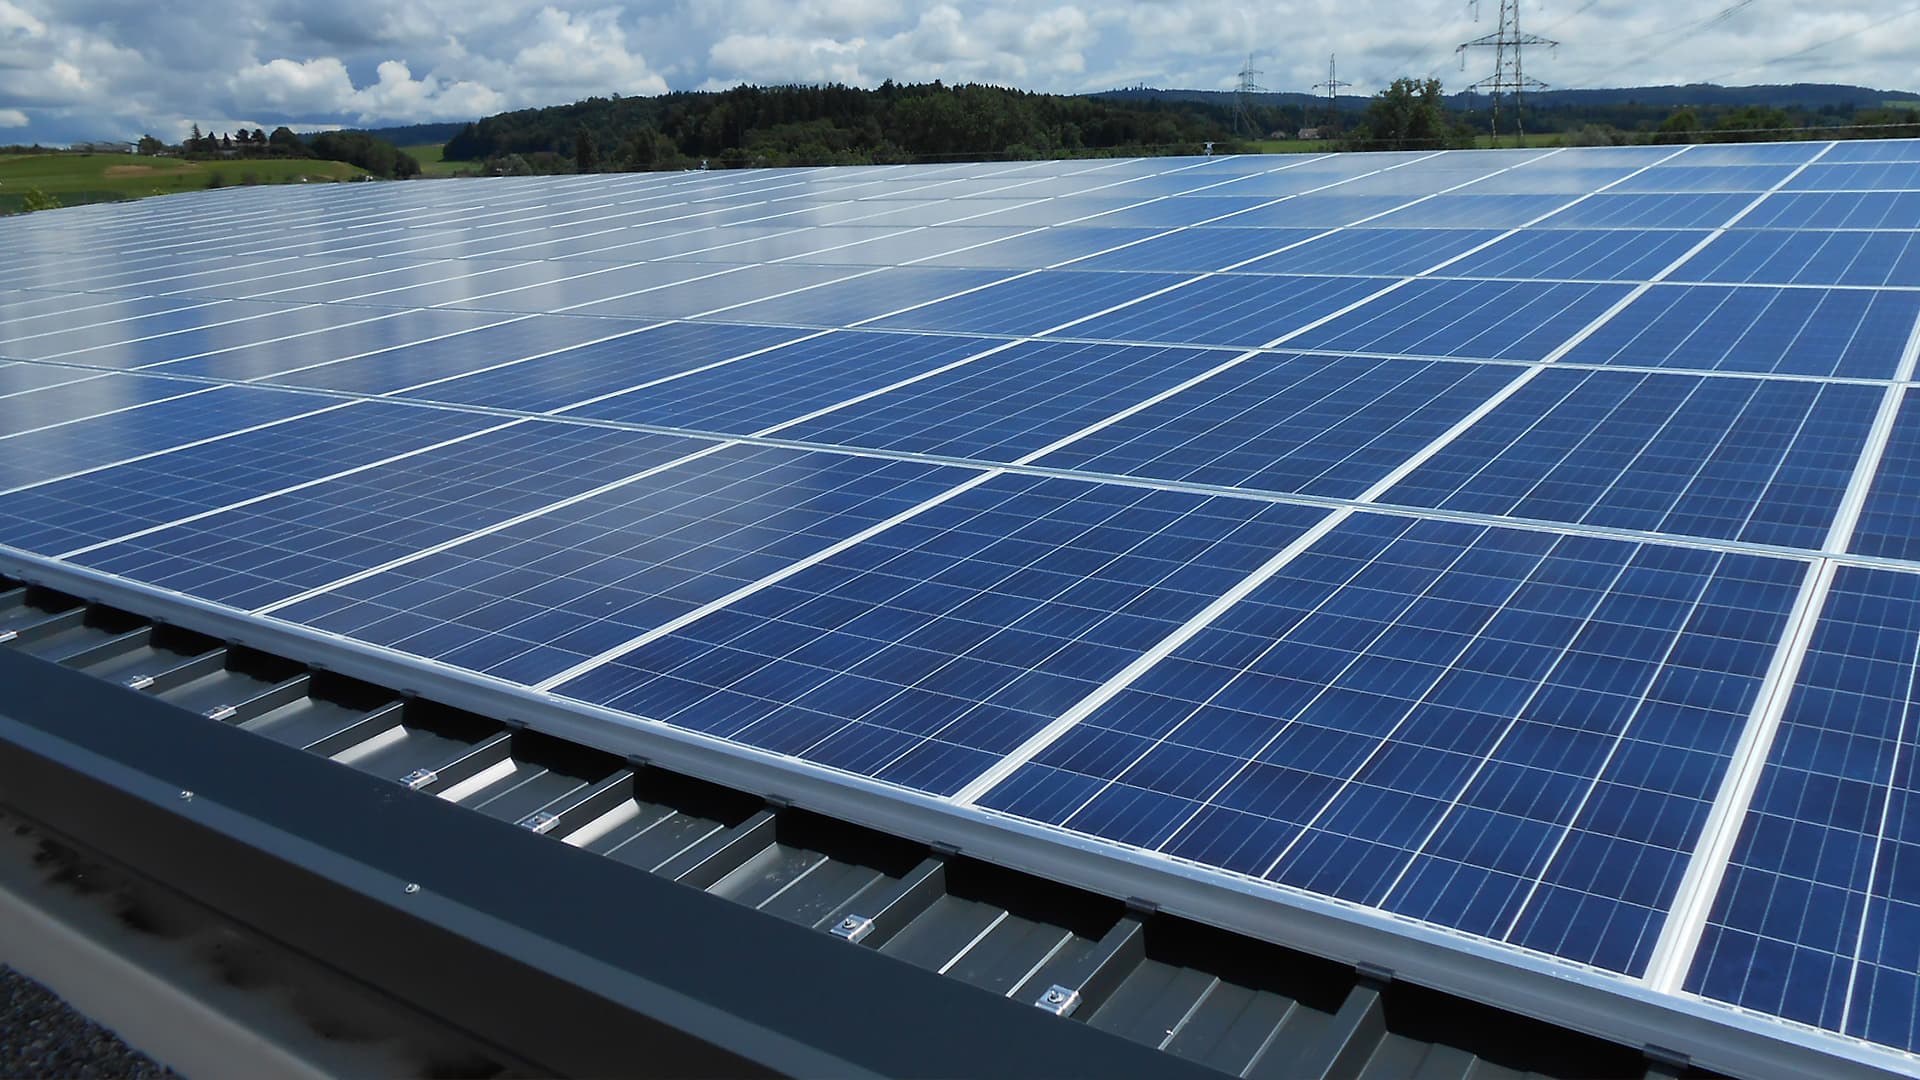 Instalación fotovoltaica: ¿qué debo tener en cuenta? 5